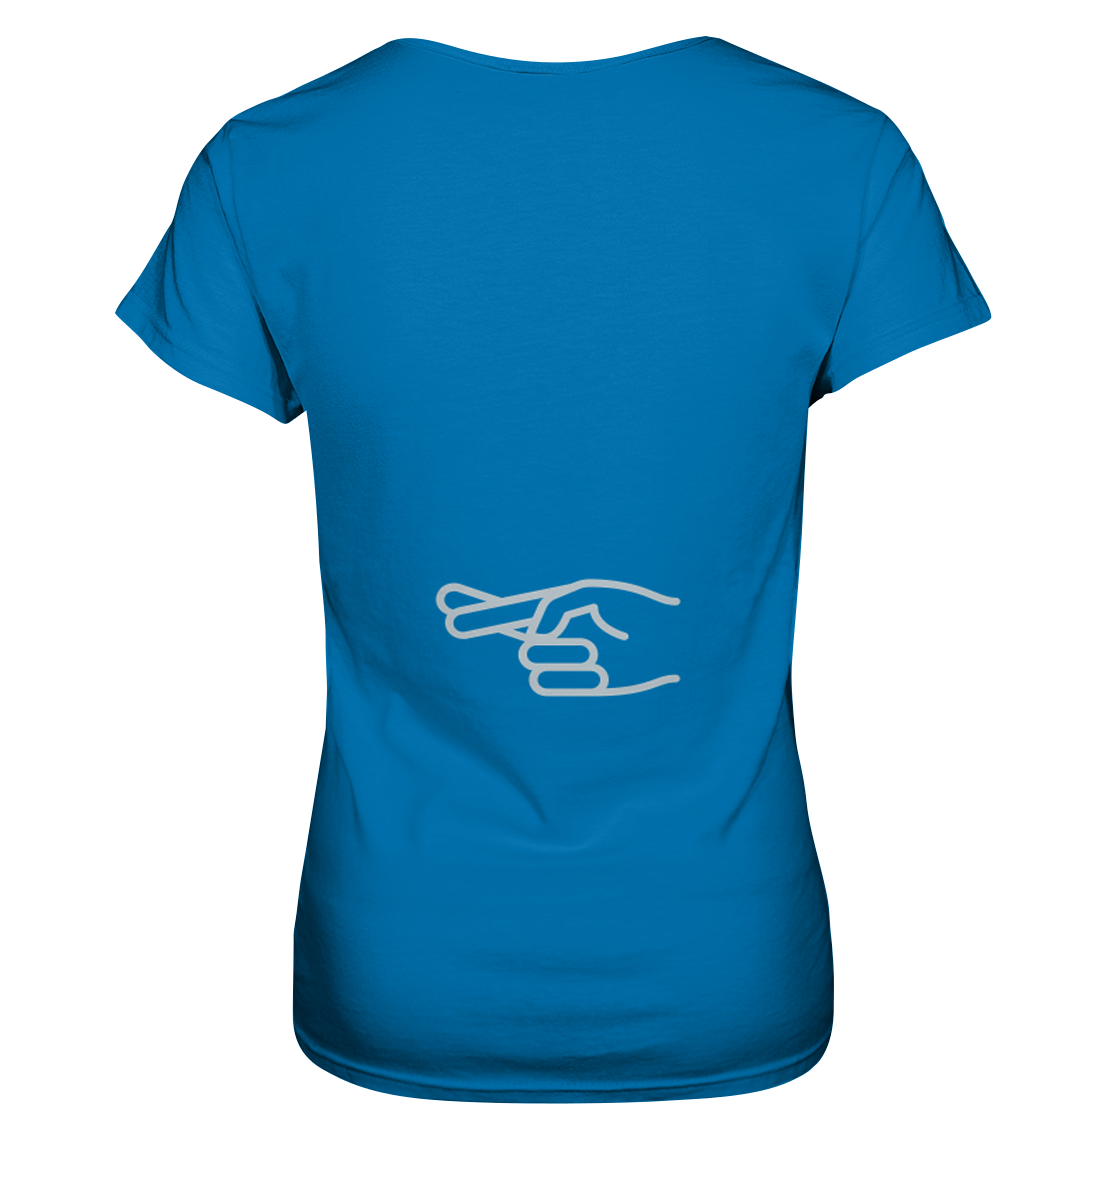 Damen-T-Shirt, rundhals, beidseitig bedruckt, vorn Spruch "Natürlich liebe ich ihn mehr als mein Motorrad", hinten Symbol "crossed fingers", leuchtend blau